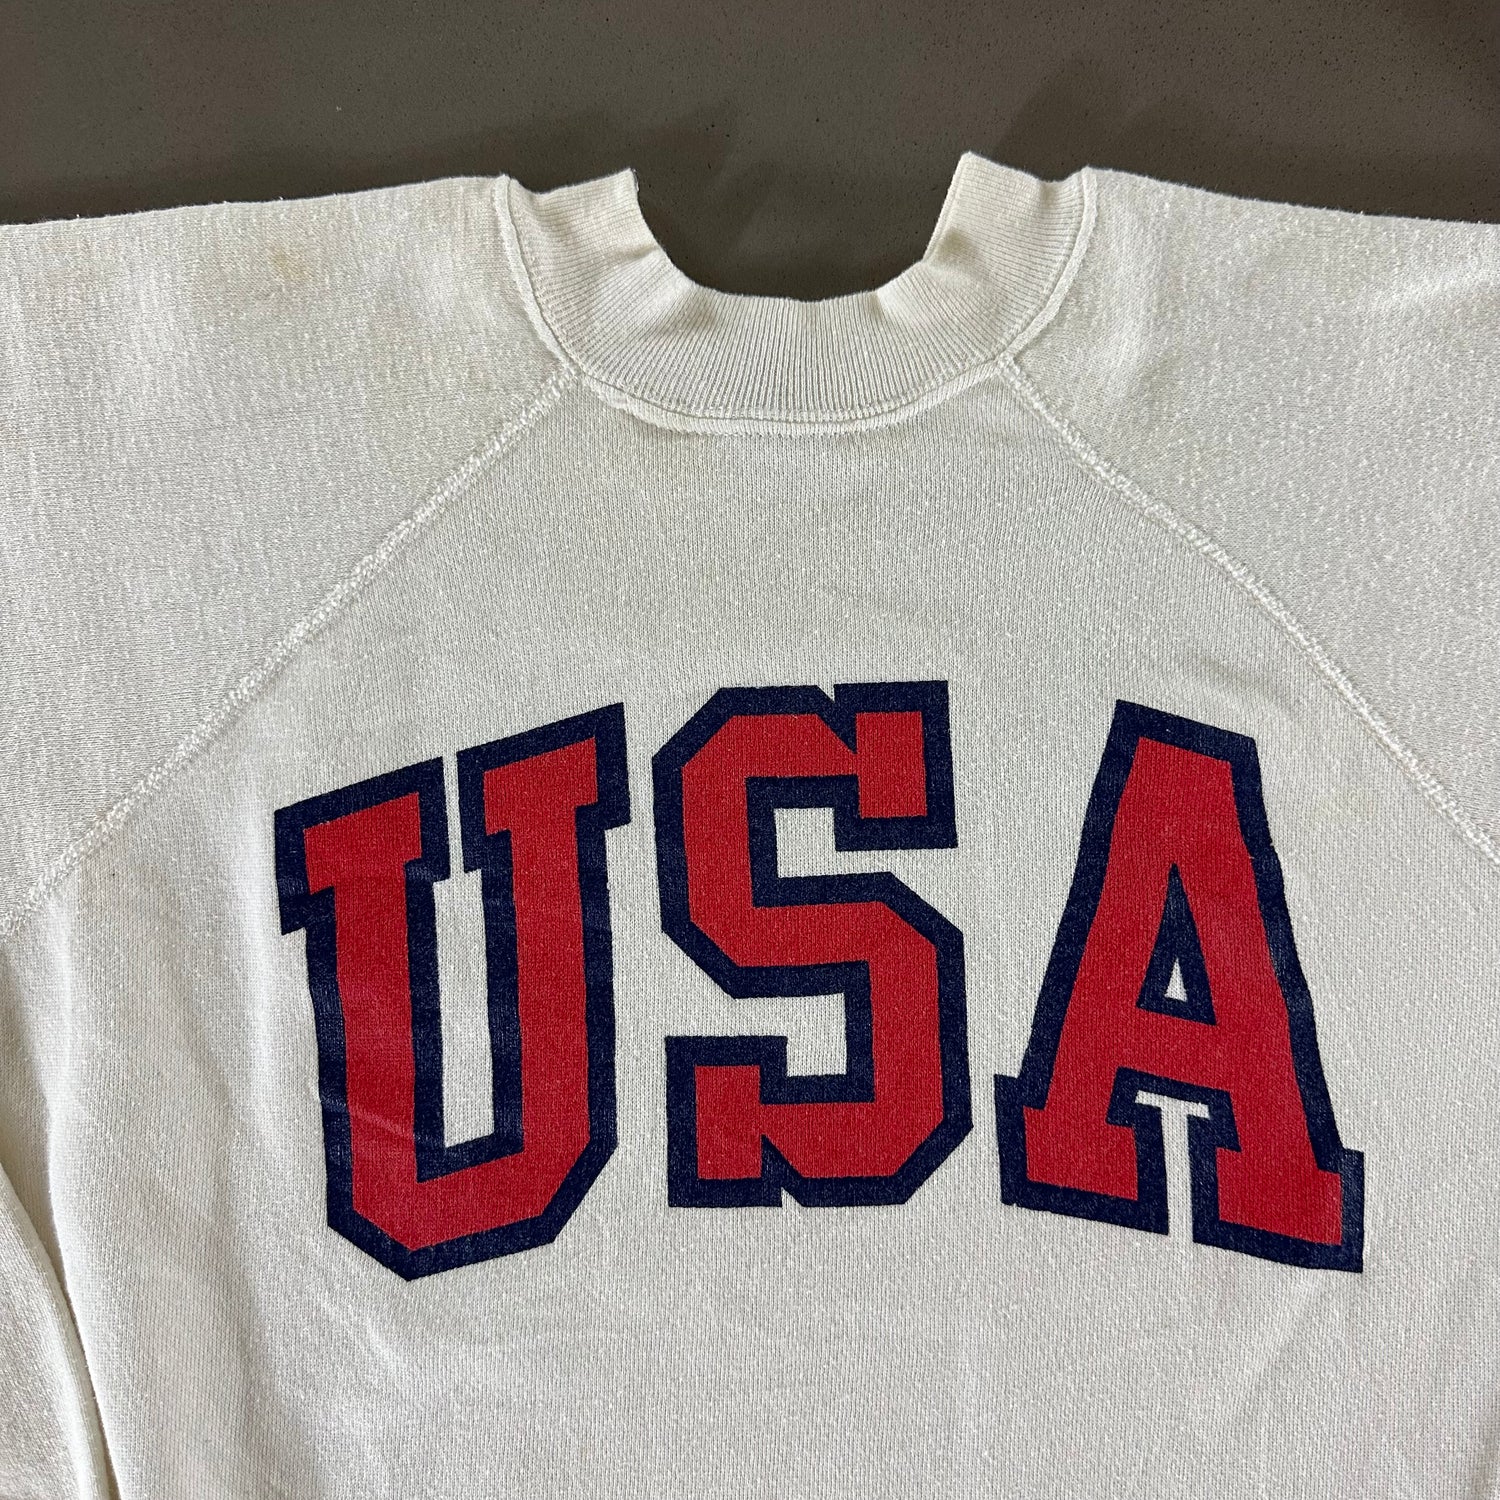 Vintage 1980s USA Sweatshirt size Medium